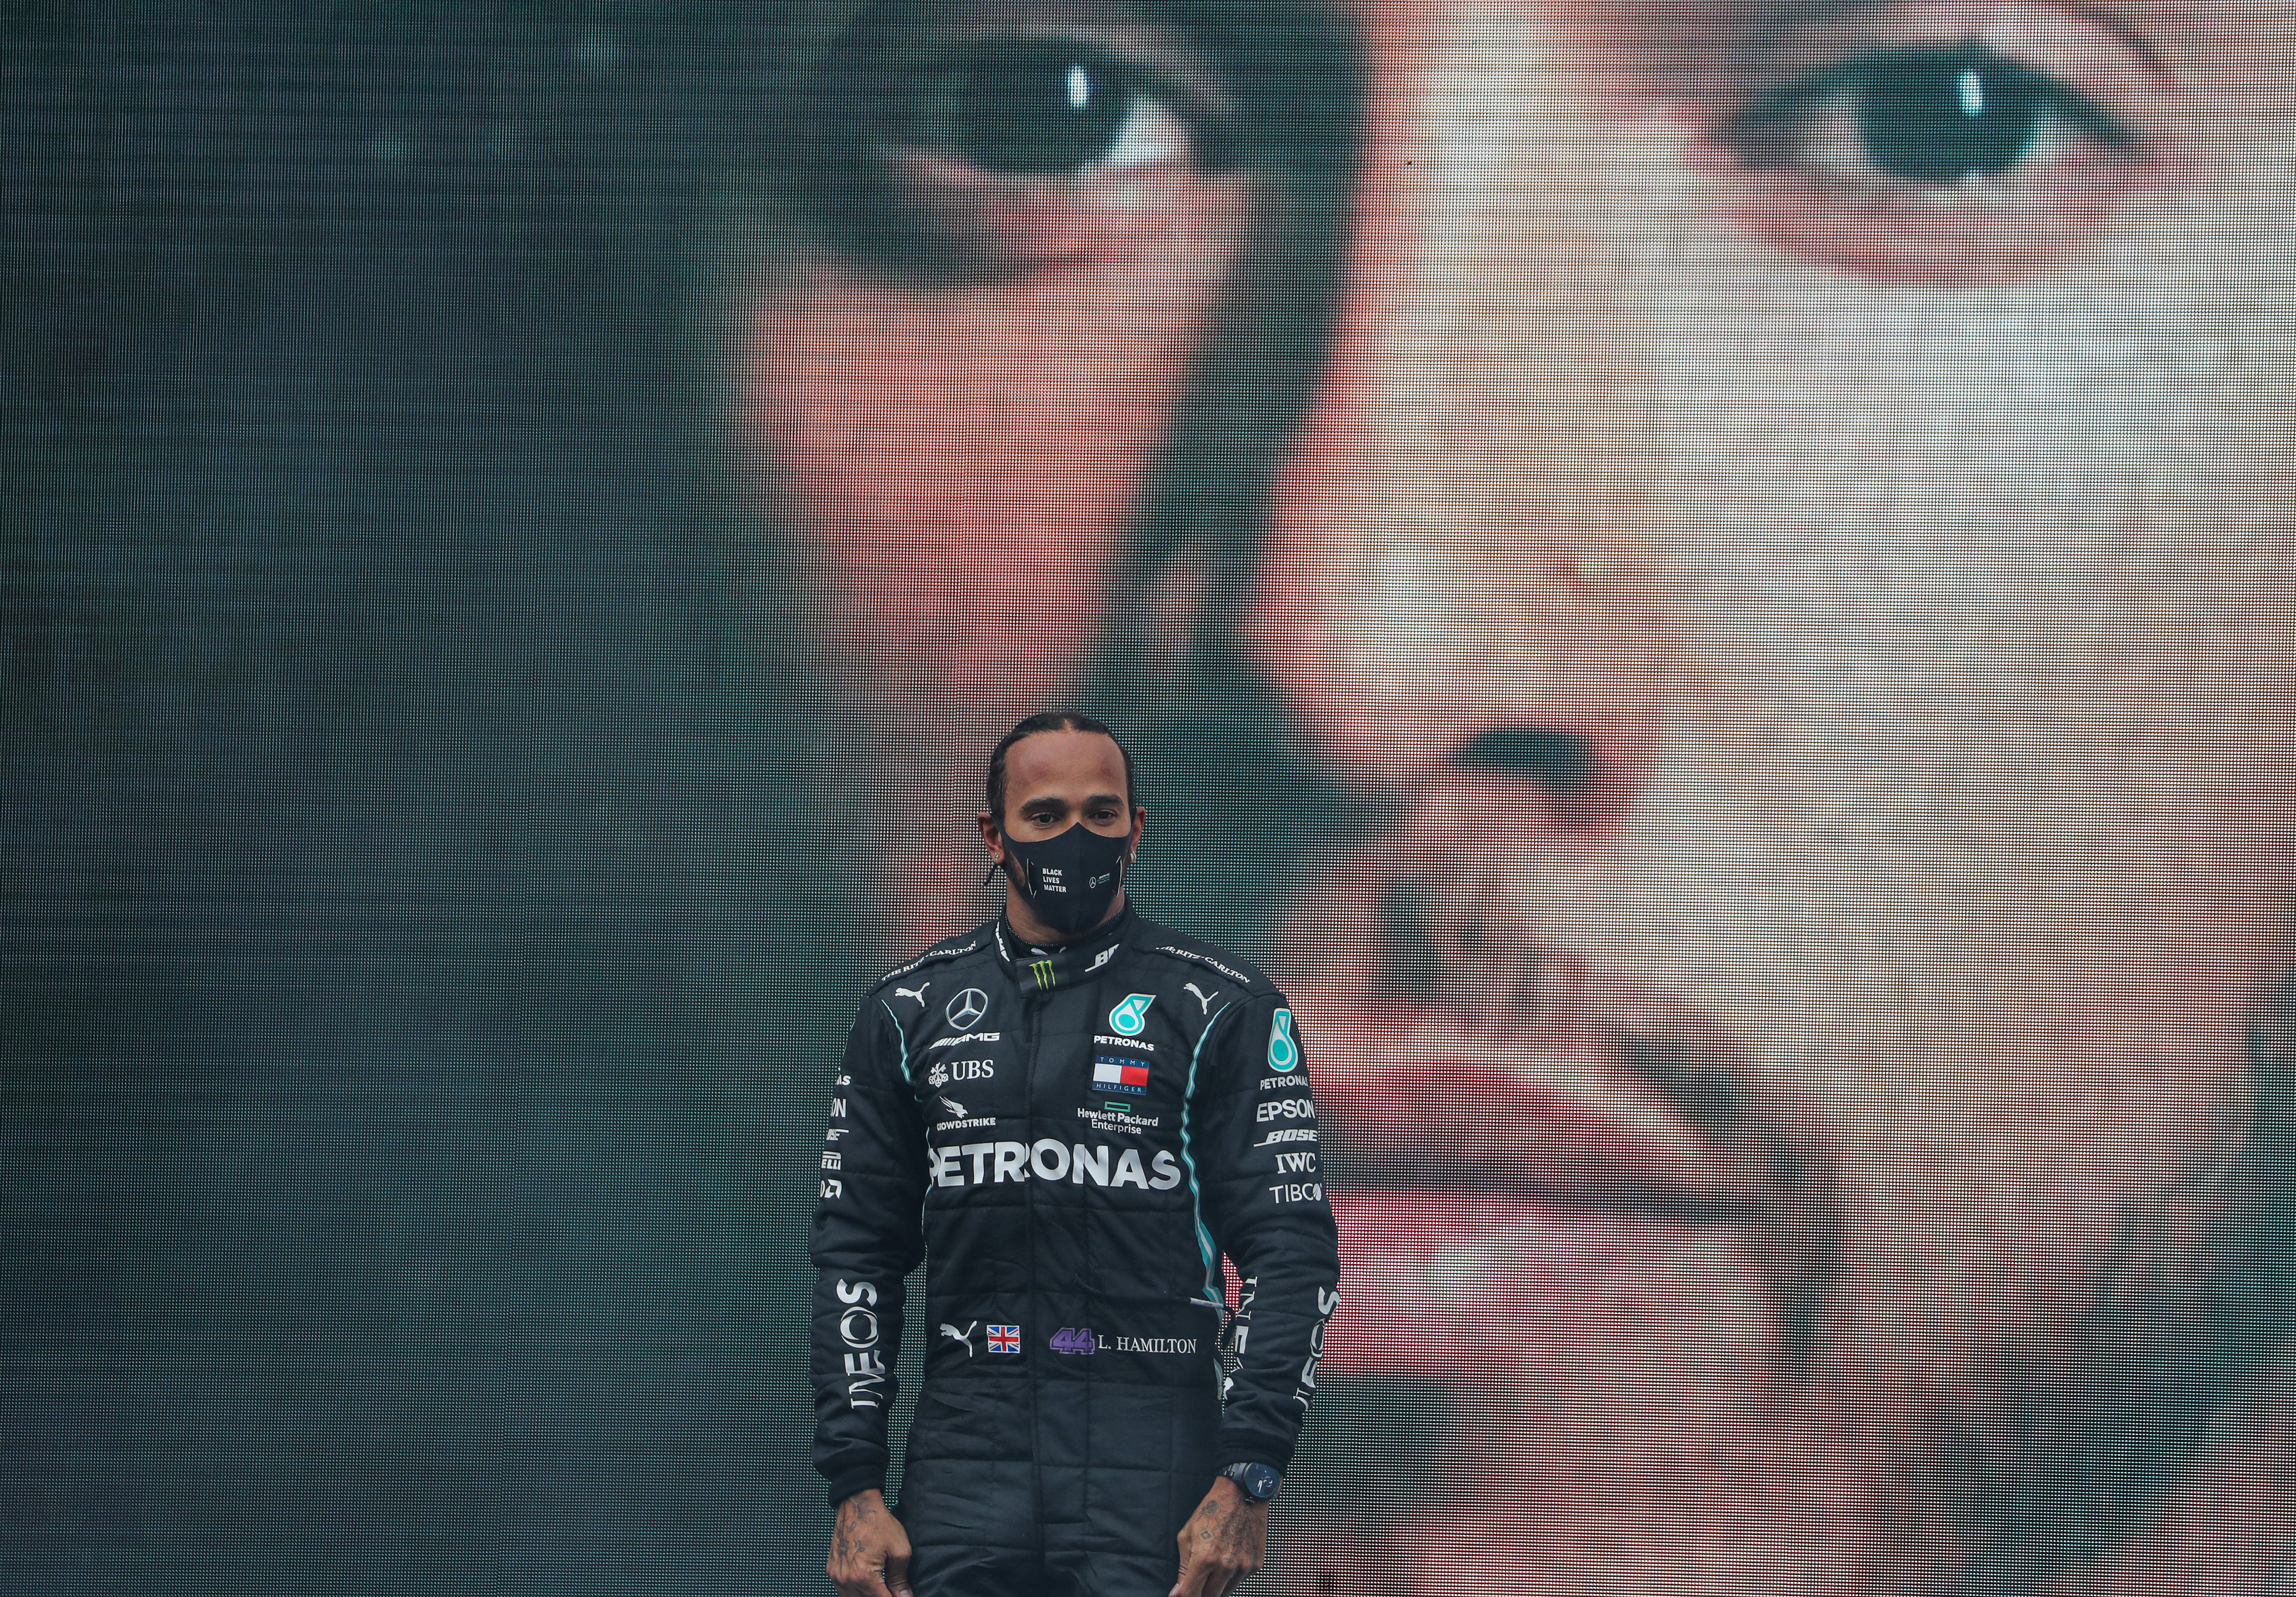 Hamilton hetedszer is világbajnok, beérte Schumachert